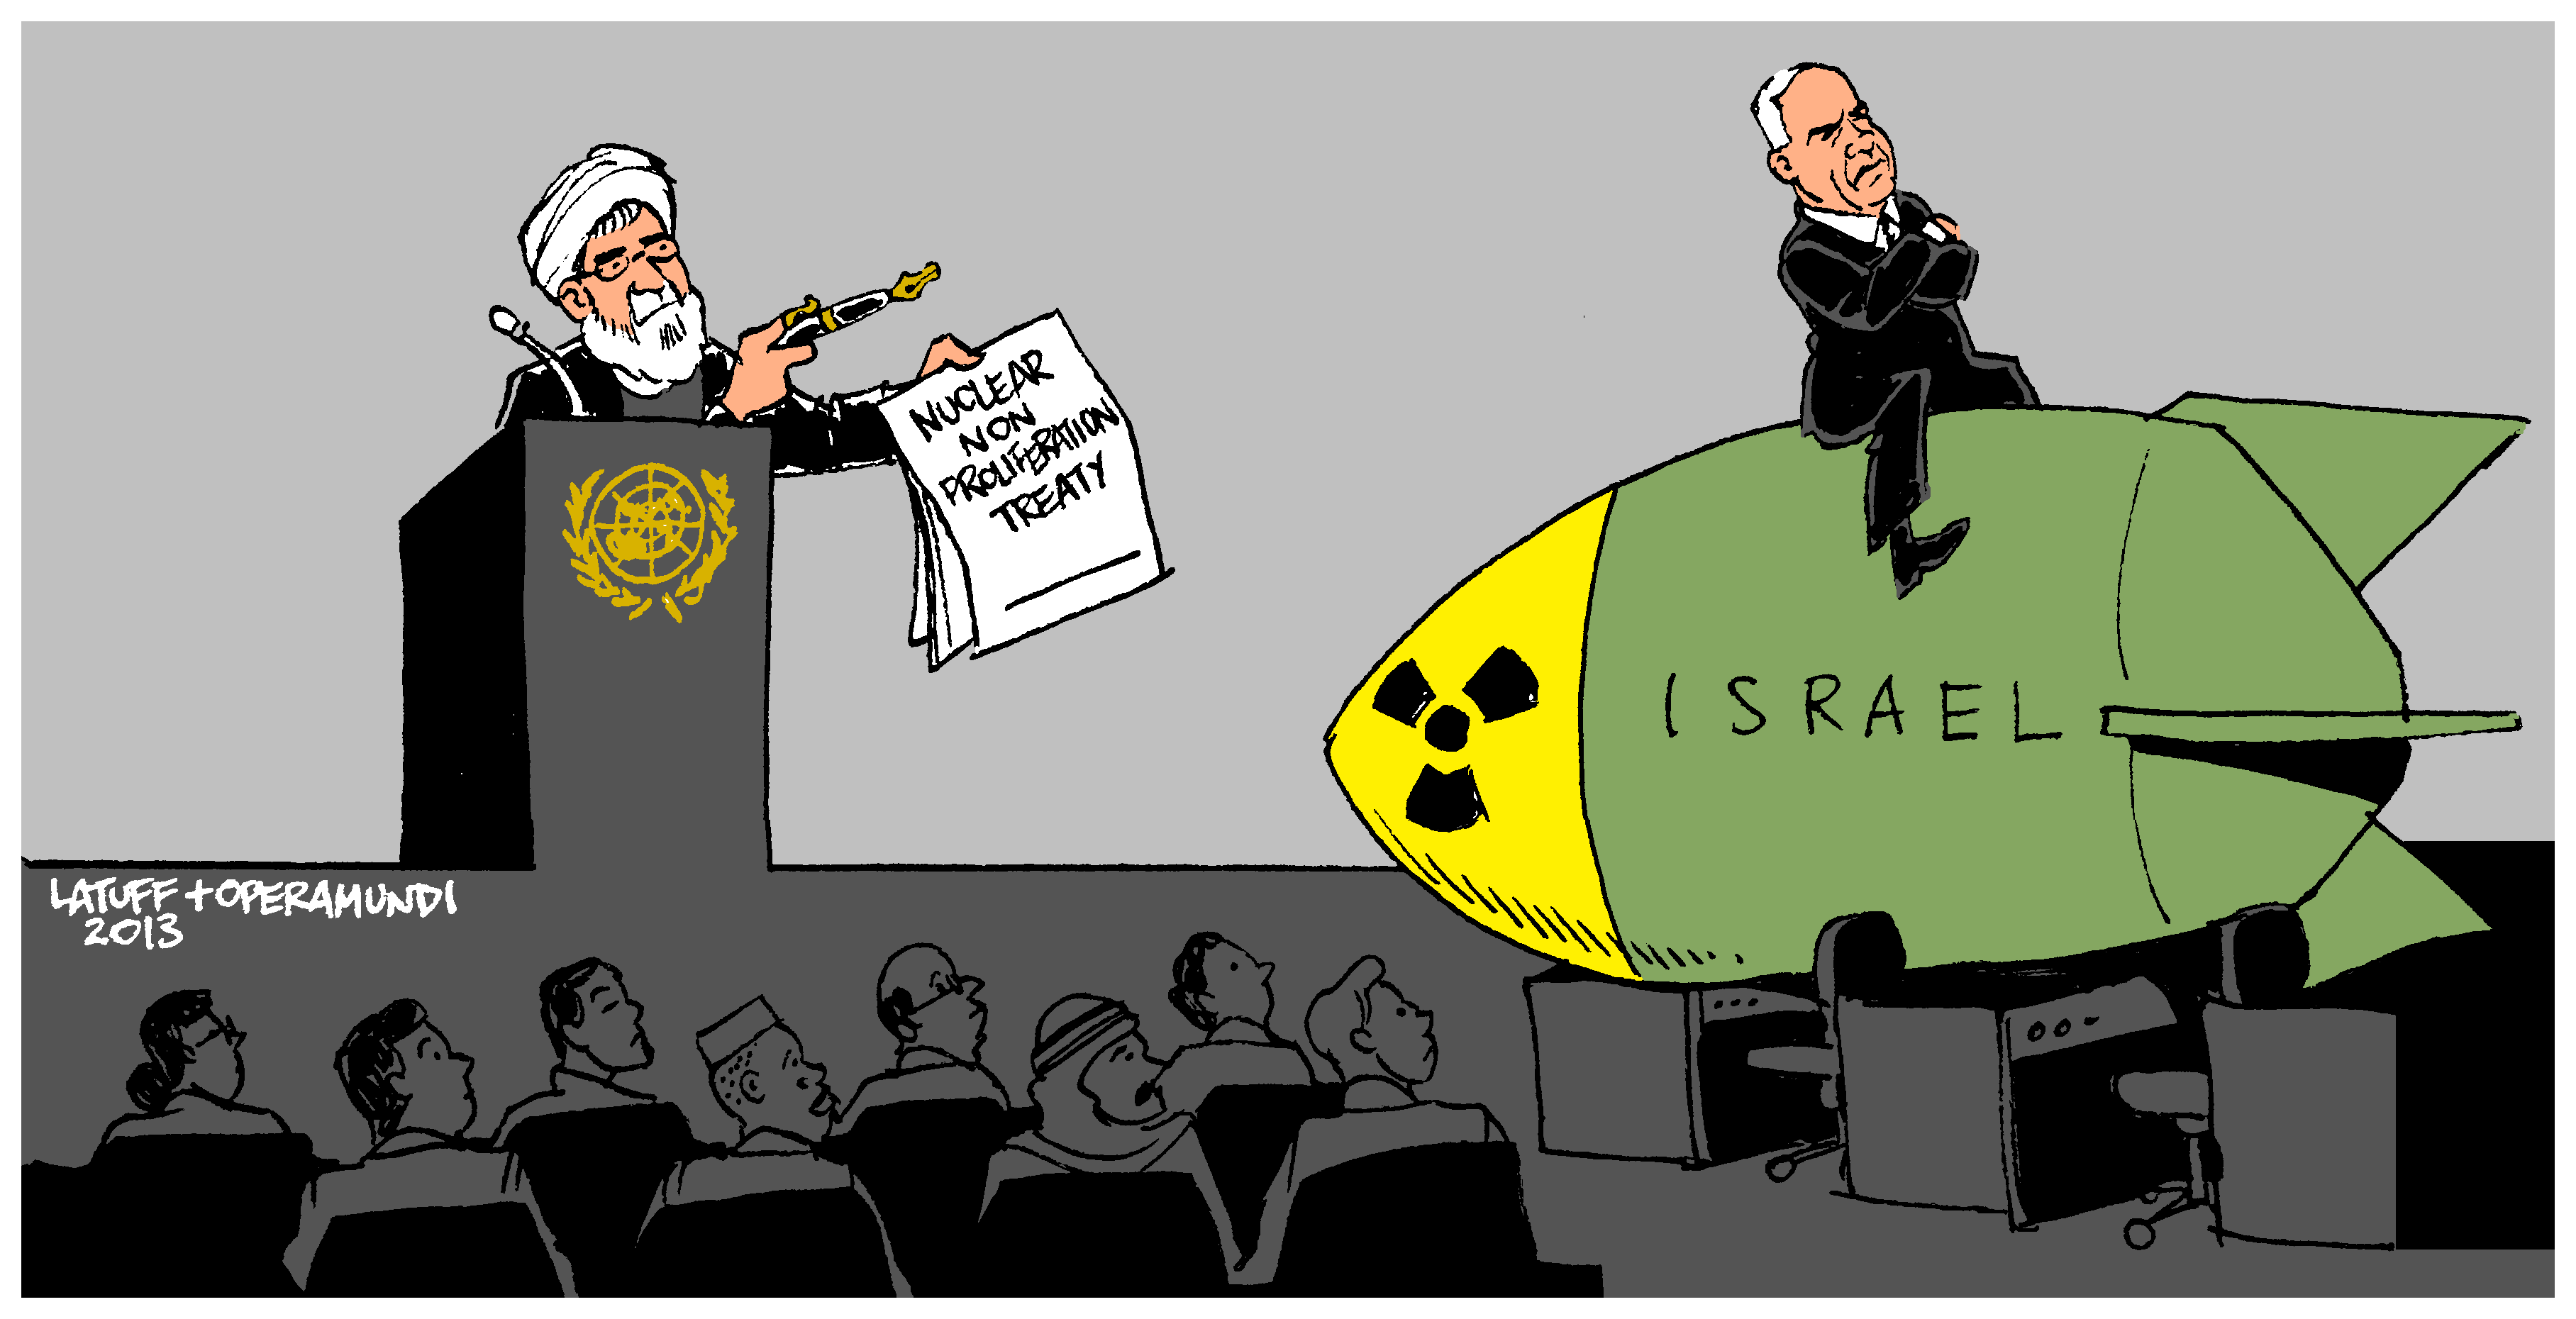  Transporteur réel des armes nucléaires (caricature)